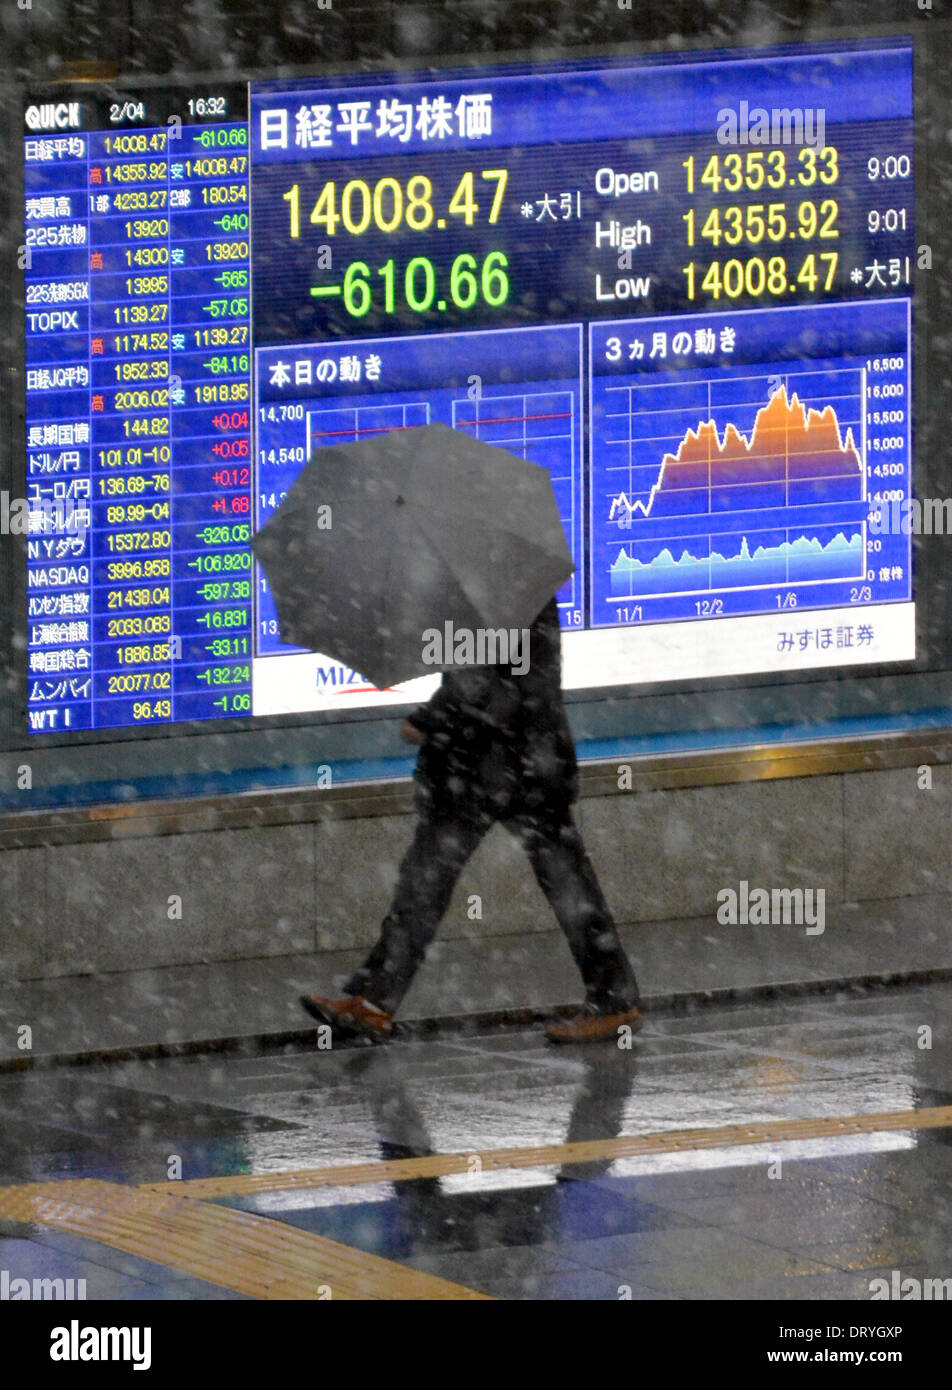 Tokio, Japan. 4. Februar 2014. Ein Fußgänger Spaziergänge durch das elektrische Brett ein Tokio Börsenmaklern im fallenden Schnee am Dienstag, 4. Februar 2014. Tokyo Aktien nahm noch eine Tracht Prügel mit der Nikkei fiel mehr als 600 Punkte auf einer viermonatigen Schließung gering. 225-Thema Nikkei Stock Average endete um 610,66 Punkte von Montag an 14,008.47, markiert die größte eintägige Rückgang etwa acht Monate. Bildnachweis: Natsuki Sakai/AFLO/Alamy Live-Nachrichten Stockfoto